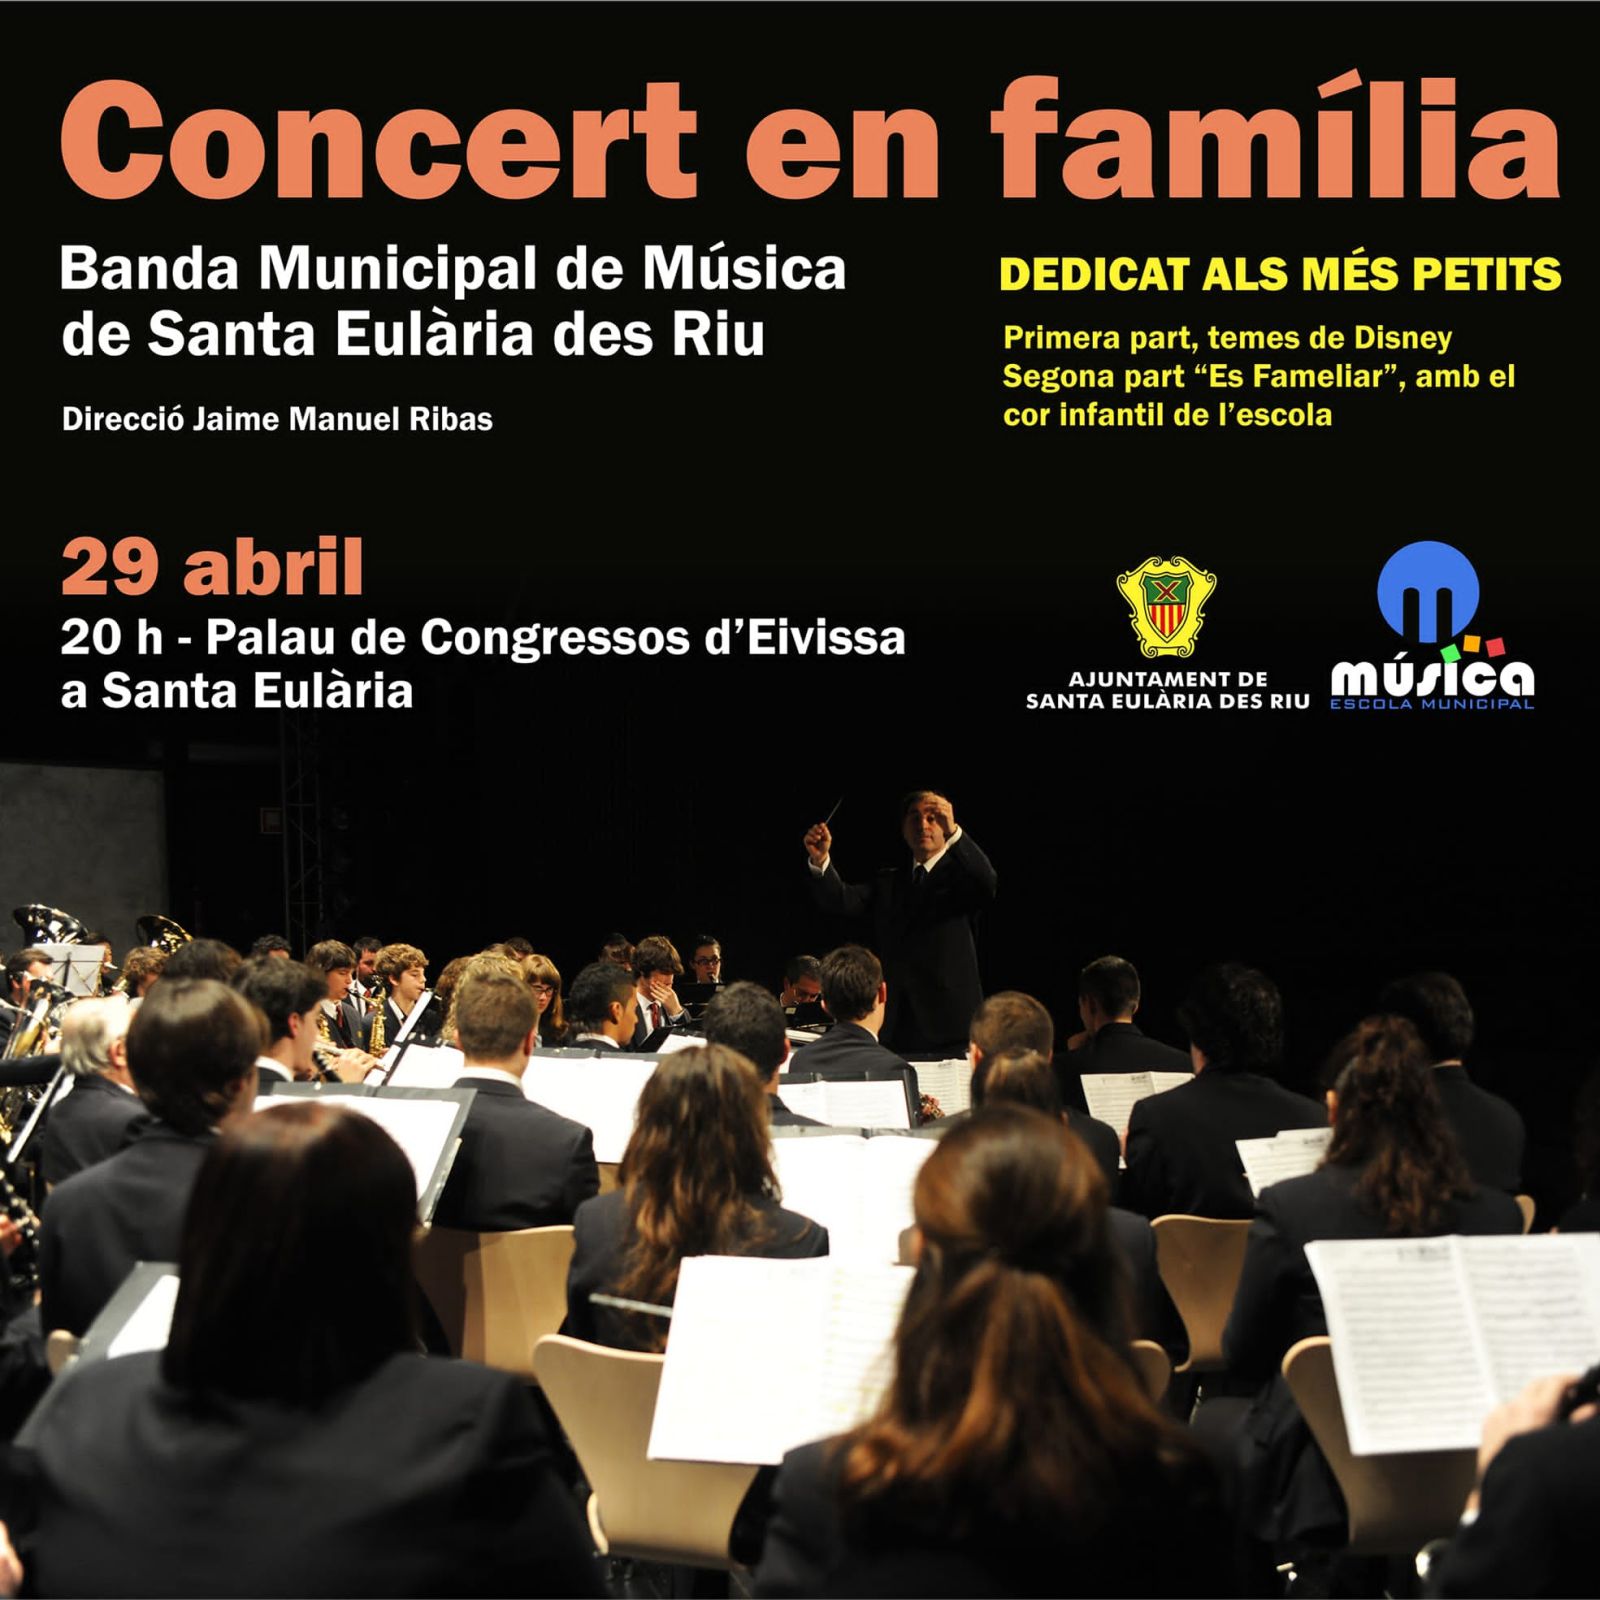 La Banda Municipal de Santa Eulària ofereix aquest dissabte un concert en família en el Palau de Congressos d'Eivissa